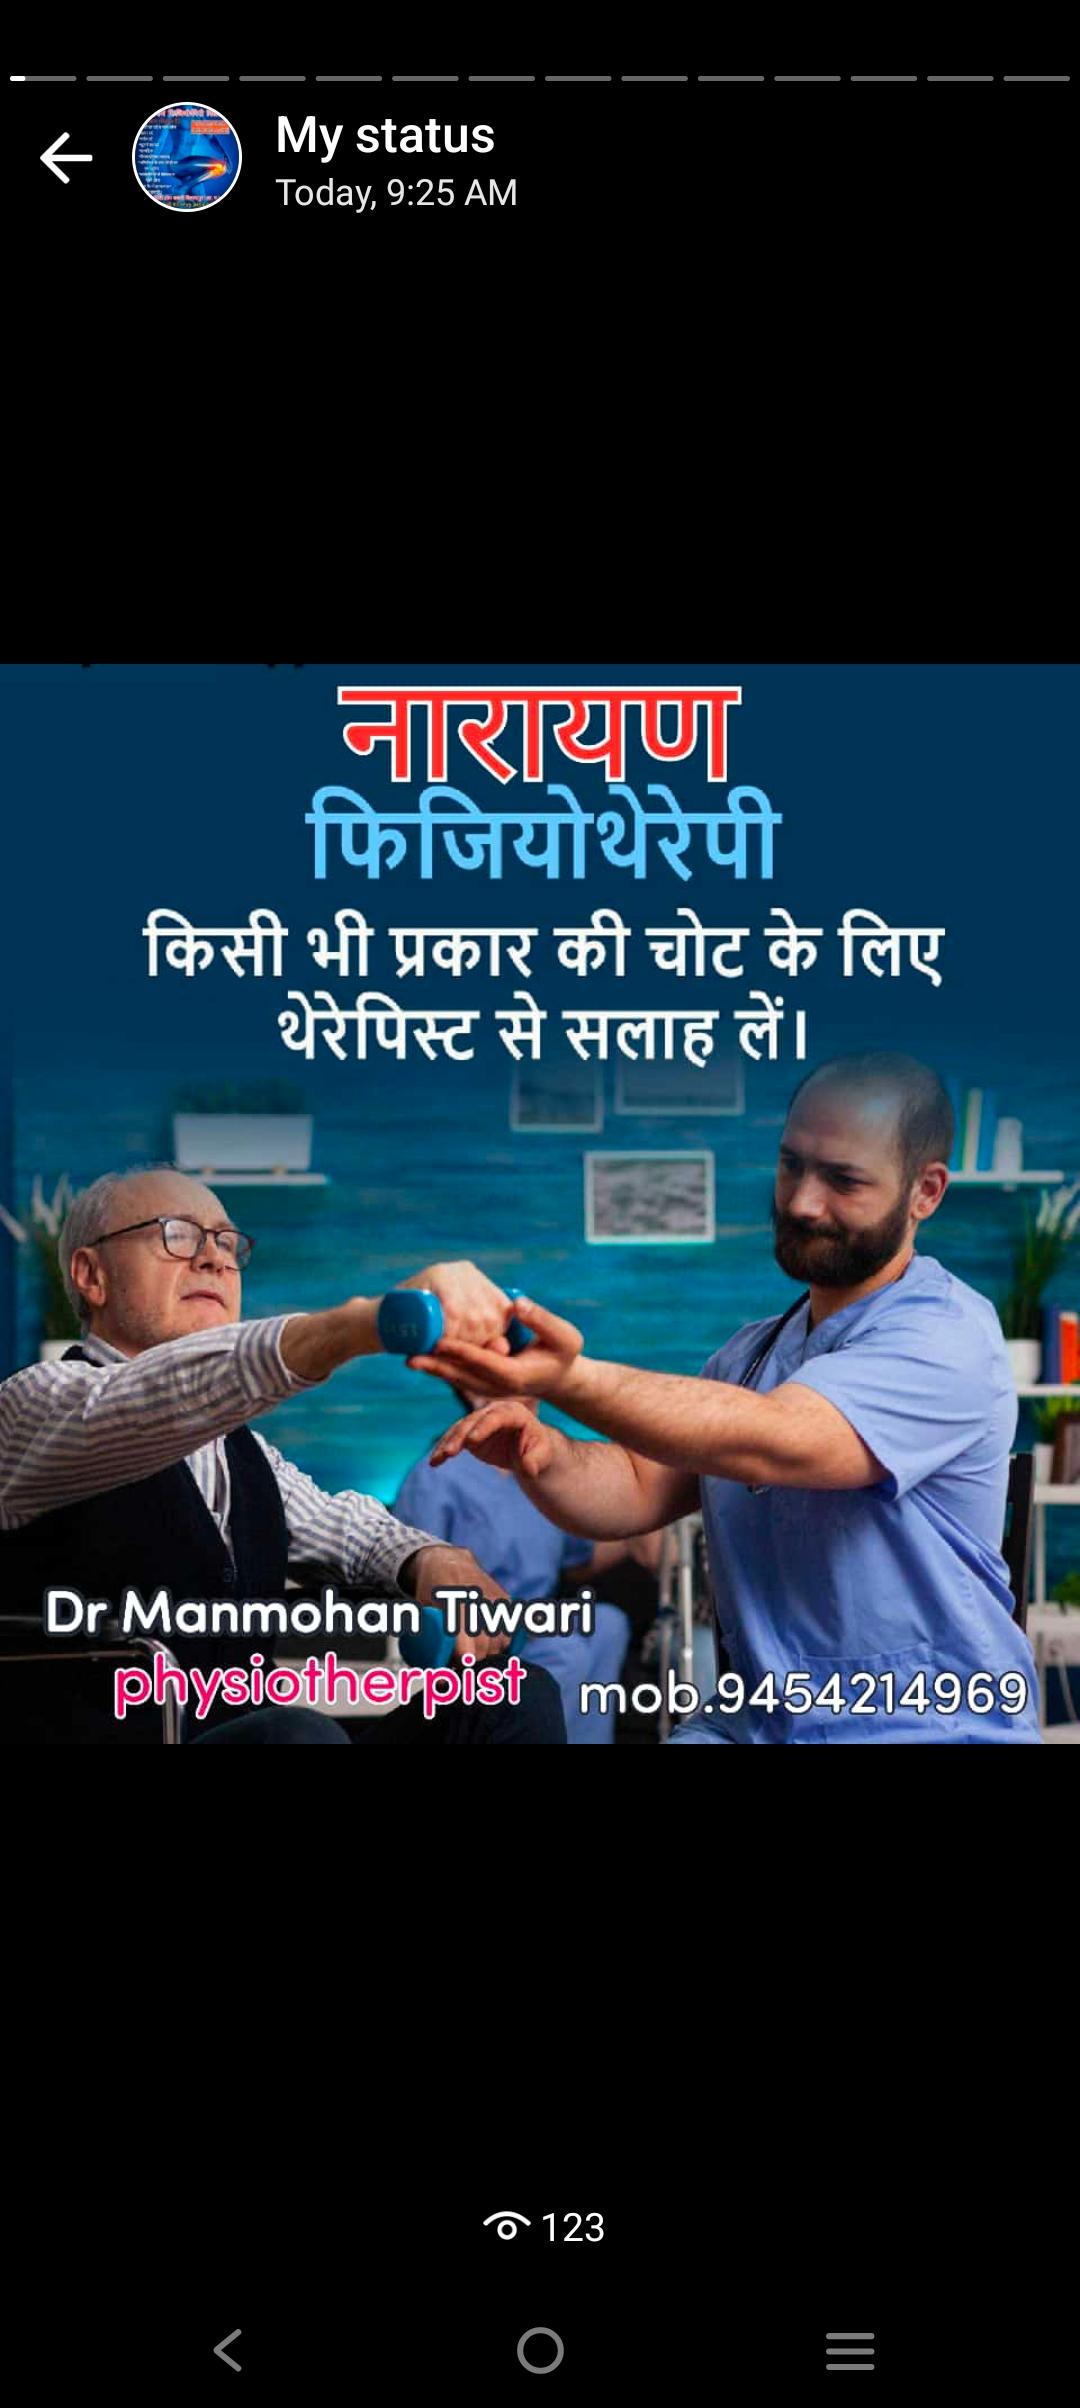 Dr. Manmohan Tiwari